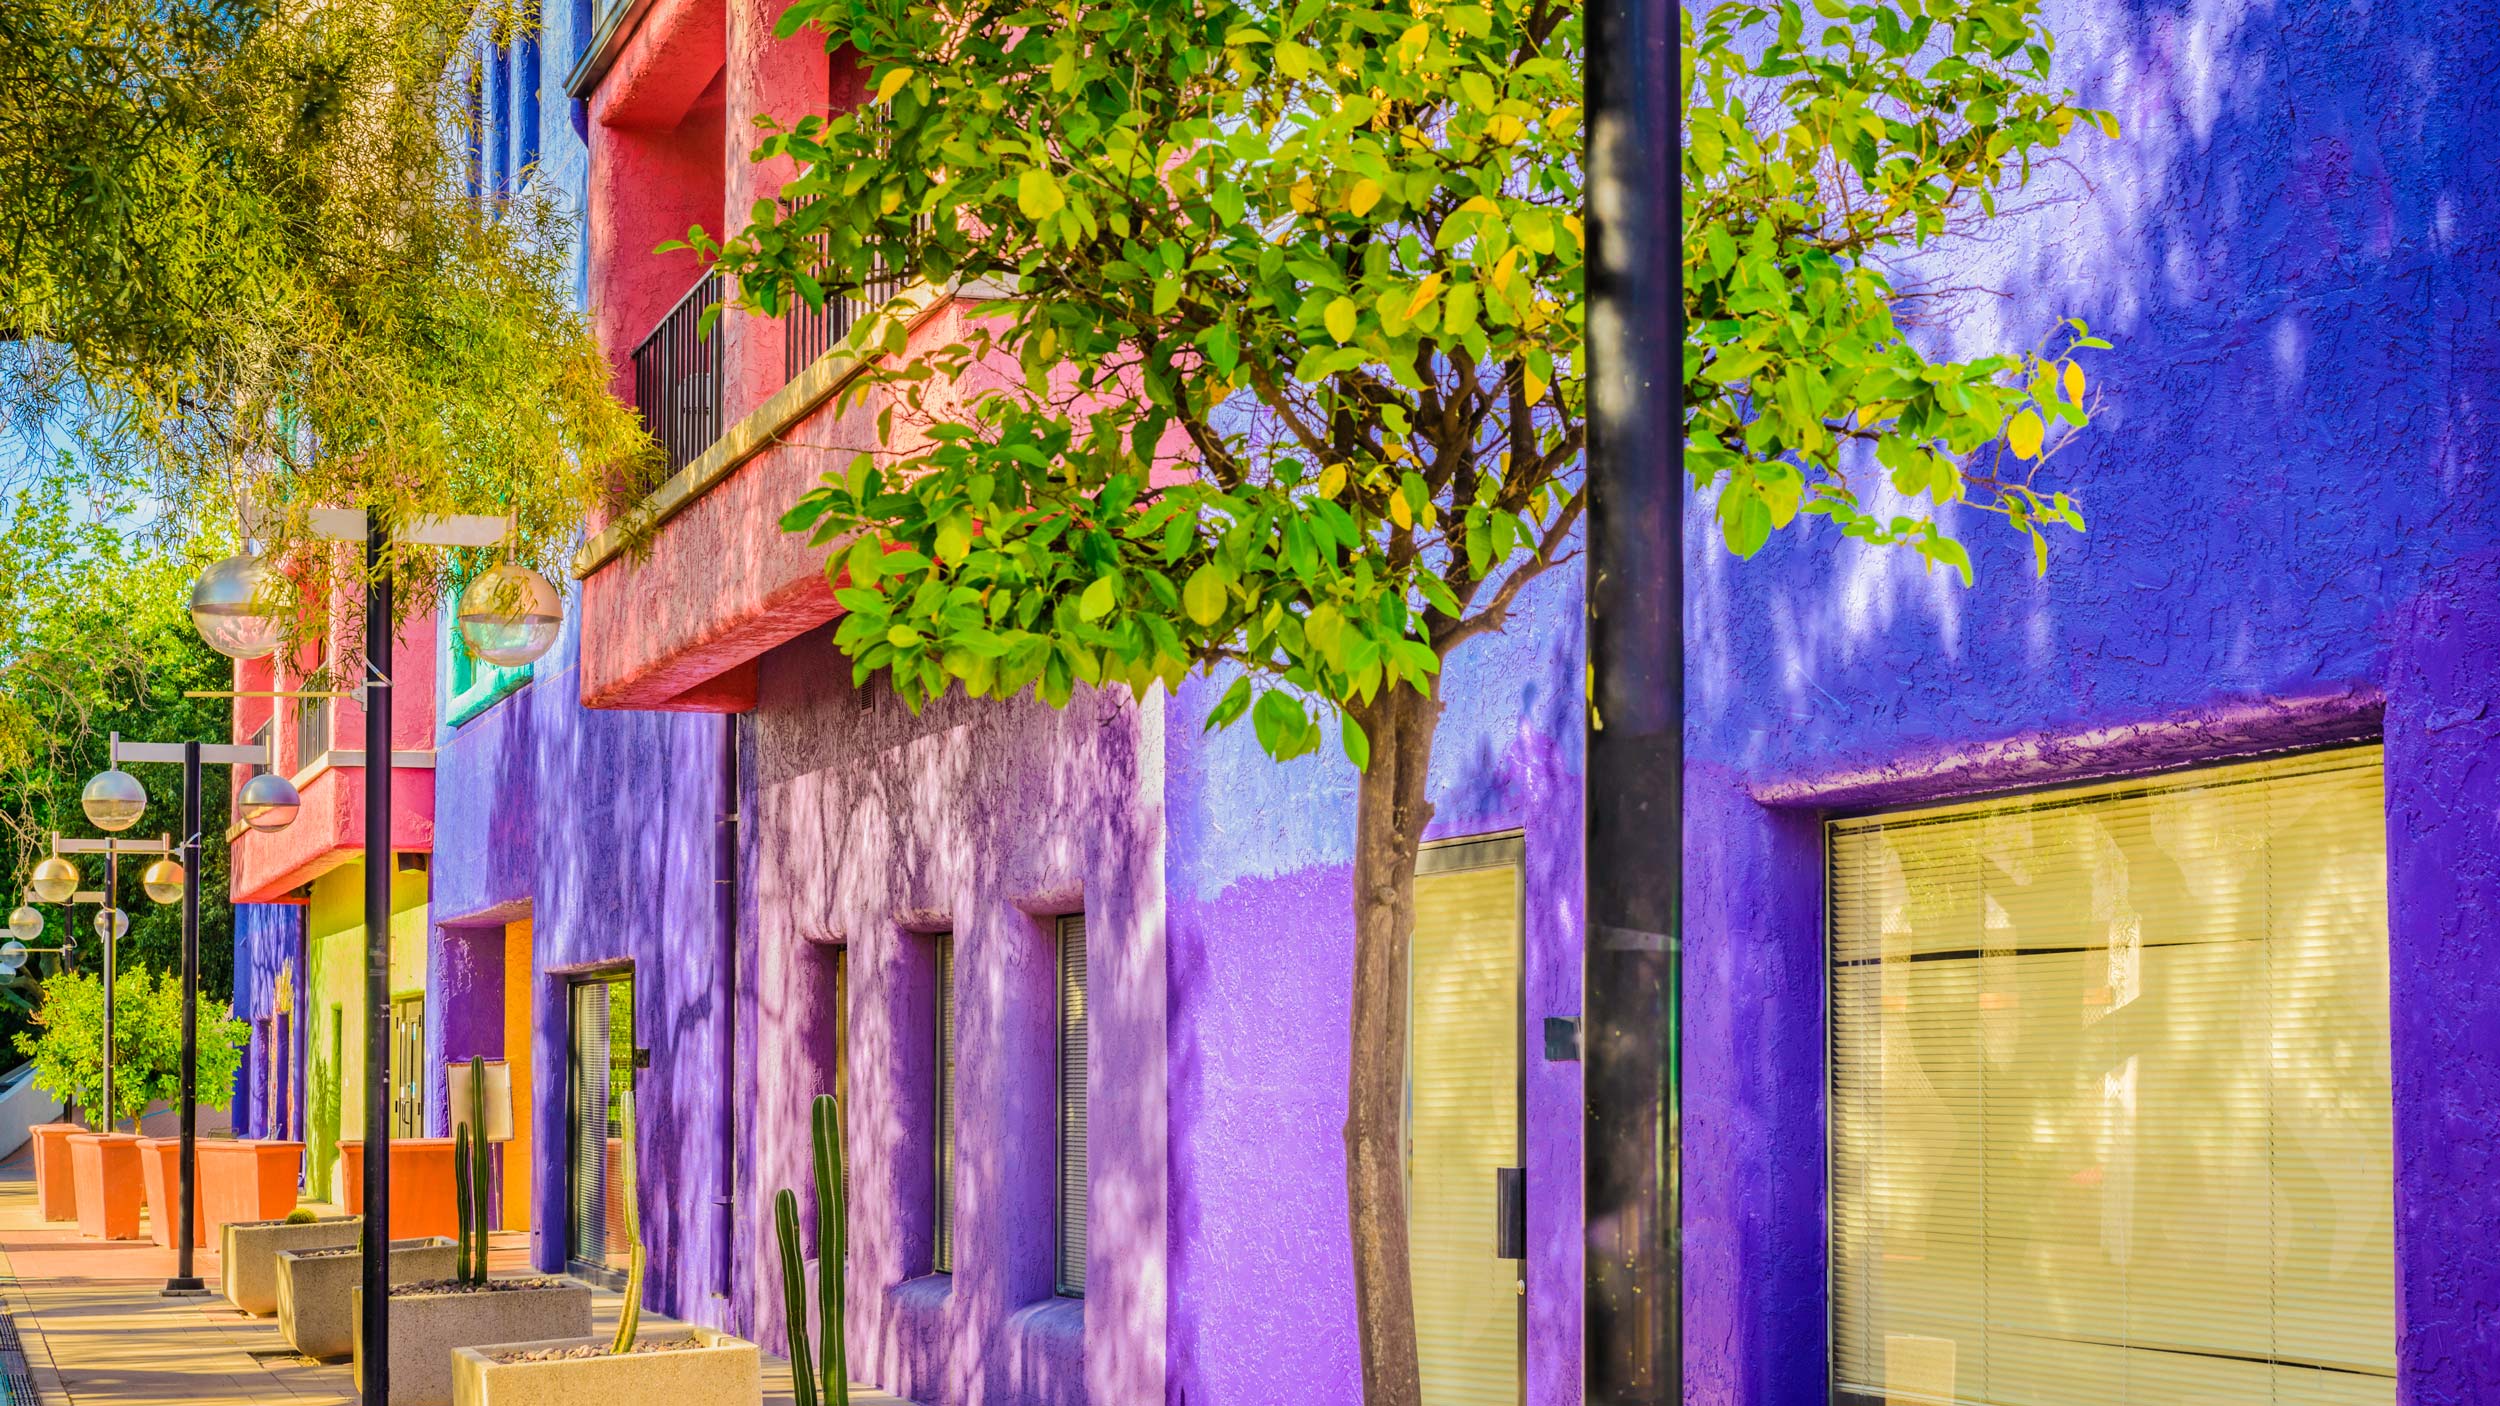 Colorful Tuscon, Arizona cityscape